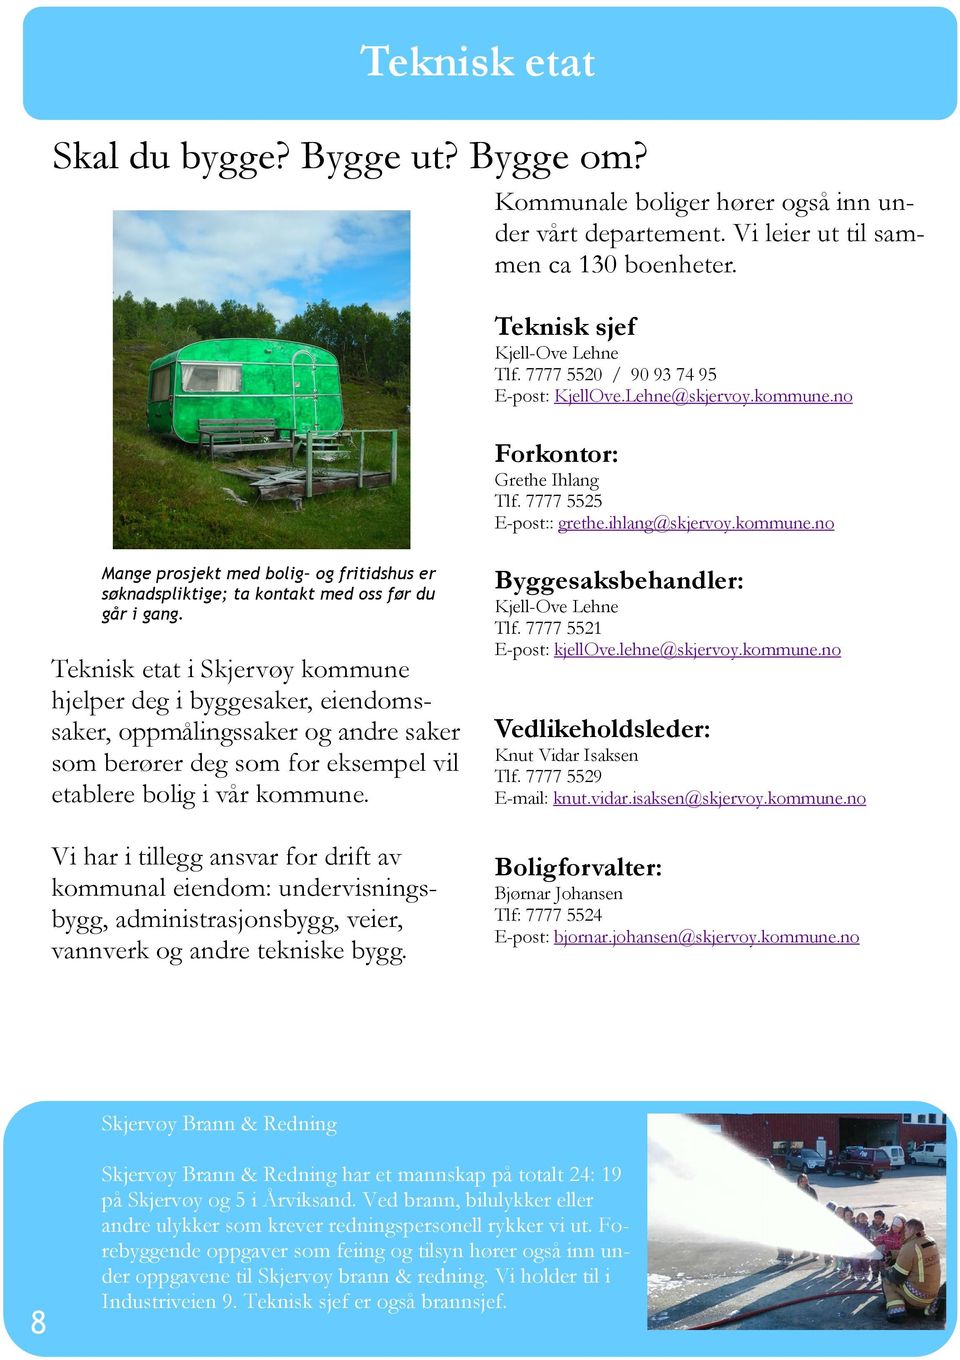 Teknisk etat i Skjervøy kommune hjelper deg i byggesaker, eiendomssaker, oppmålingssaker og andre saker som berører deg som for eksempel vil etablere bolig i vår kommune.